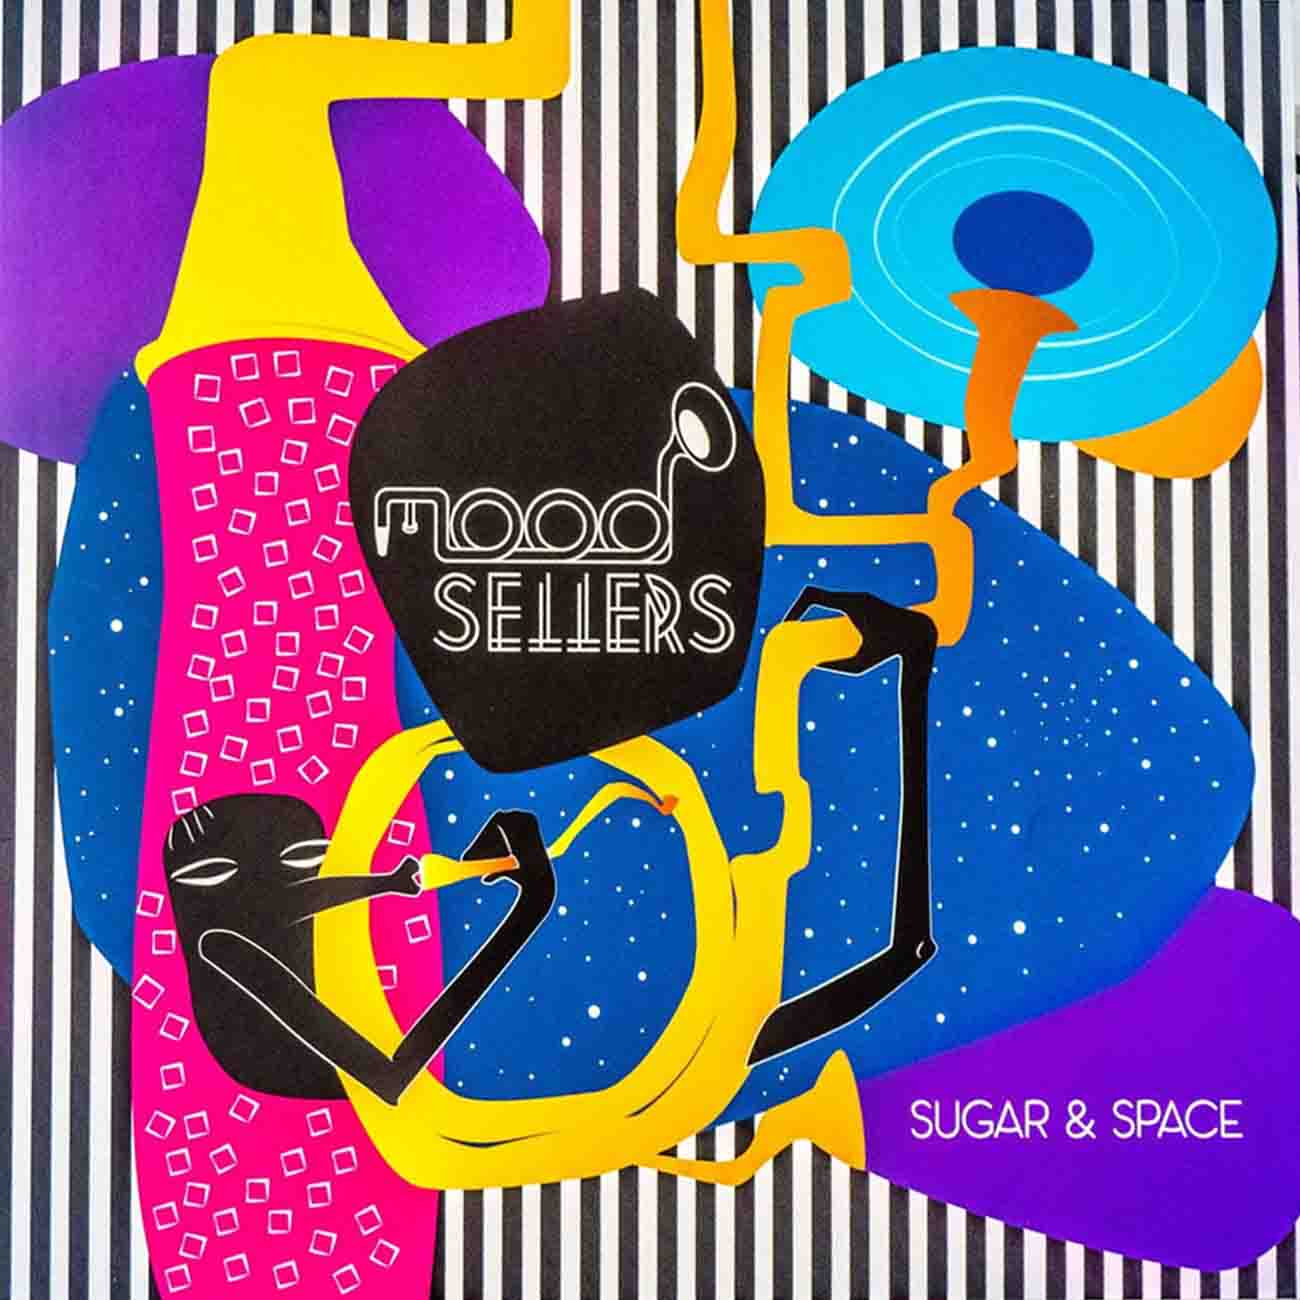 Mood Sellers - Sugar & Space